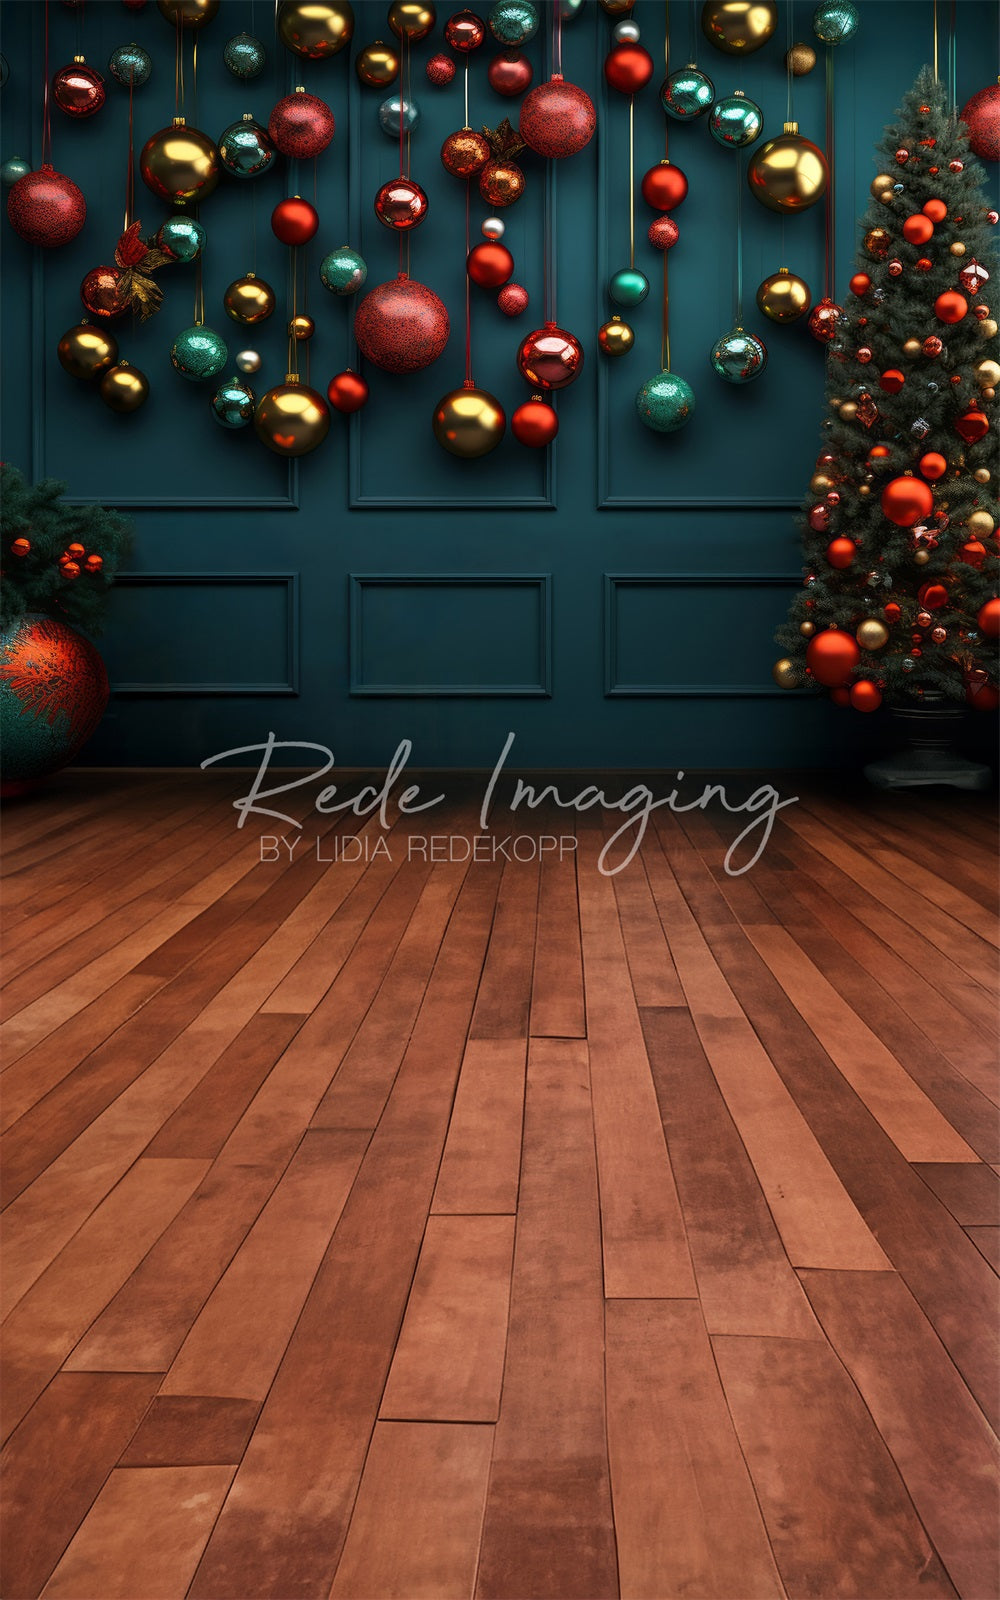 Gocce di arancio sfondo natalizio progettato da Lidia Redekopp